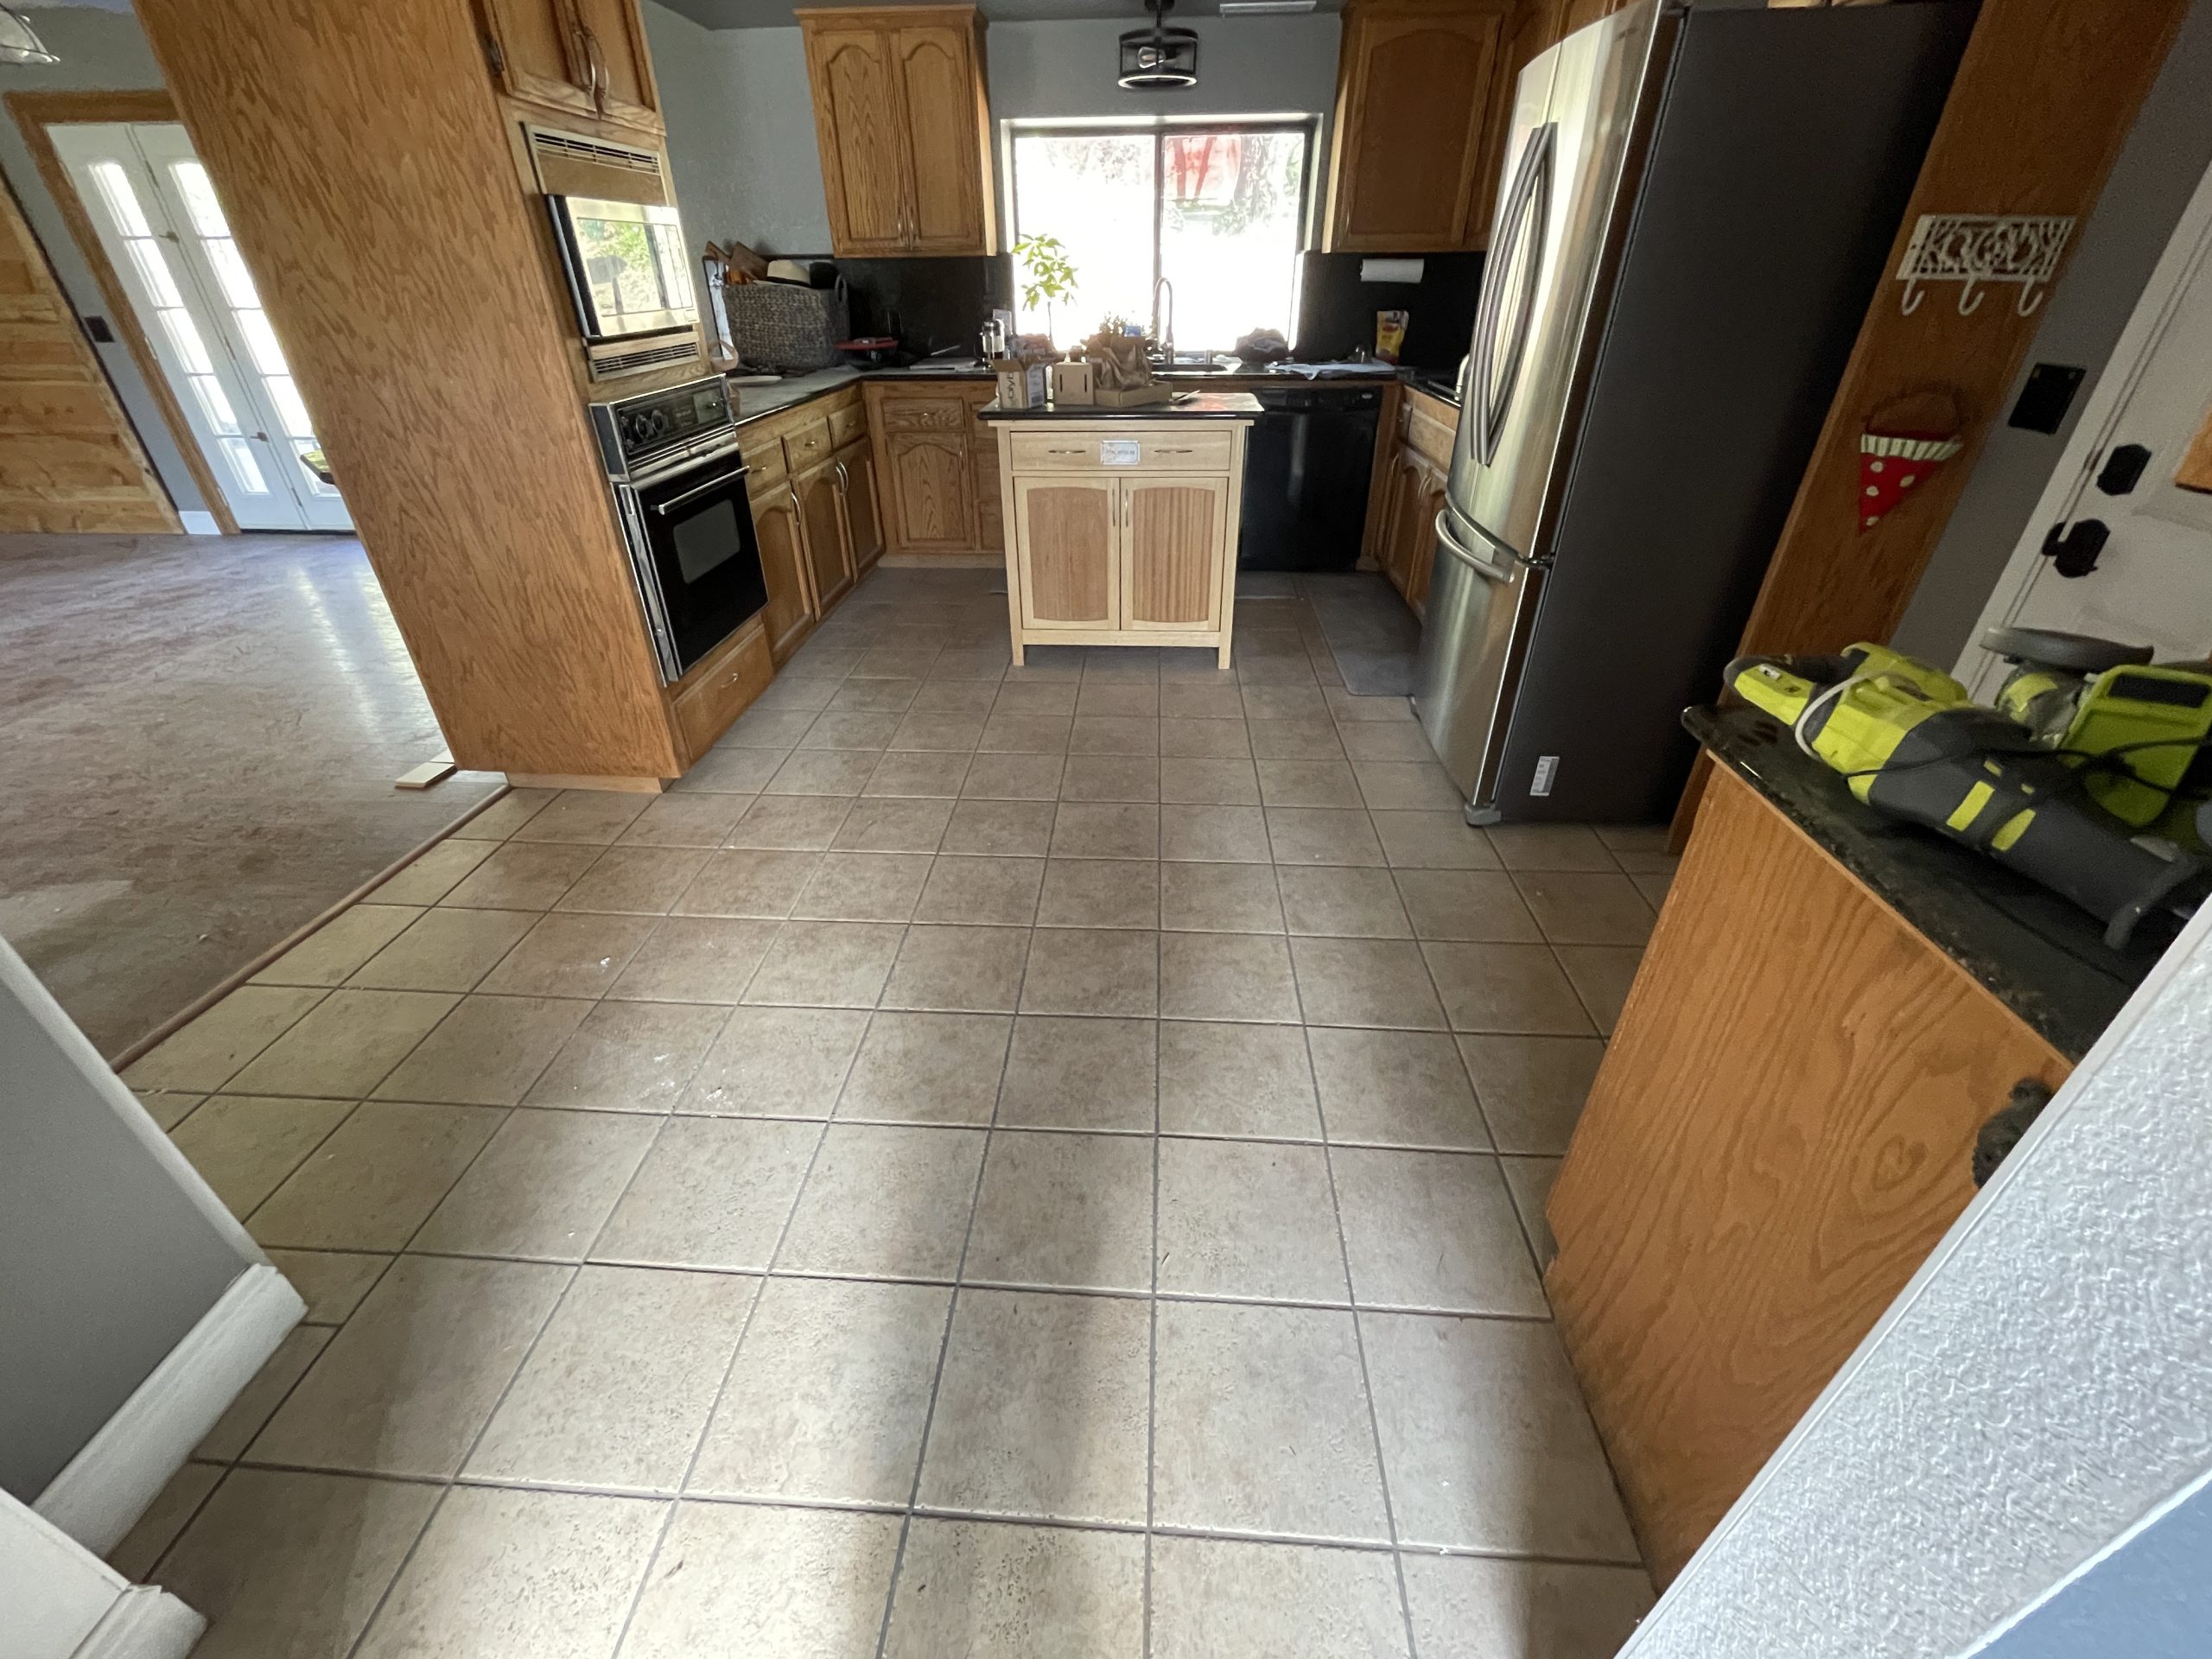 Home's kitchen floor tiles installed